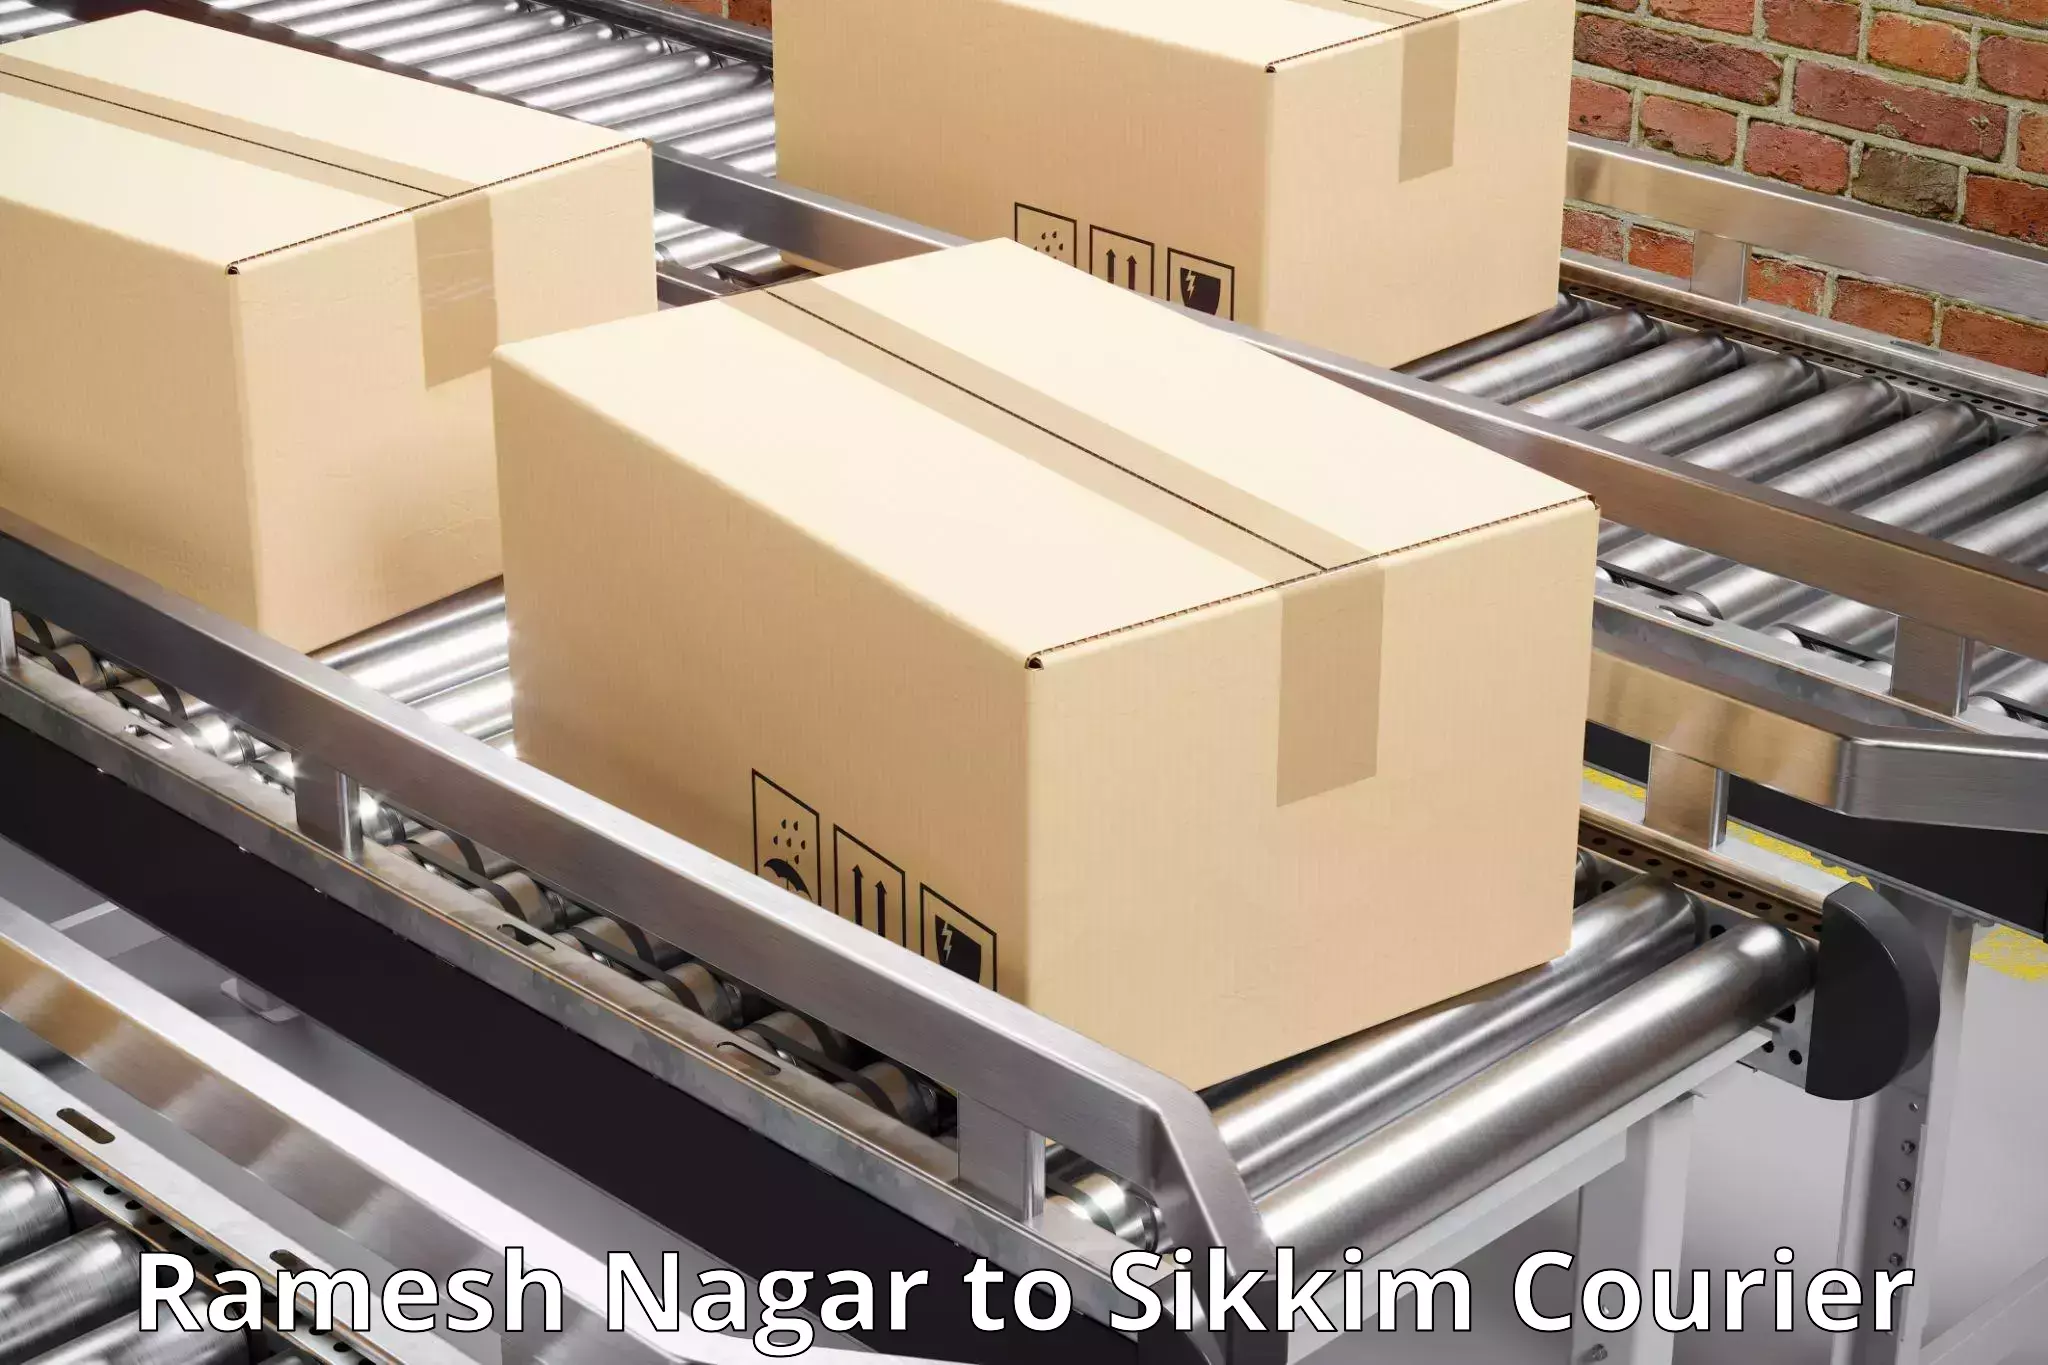 Smart courier technologies Ramesh Nagar to East Sikkim